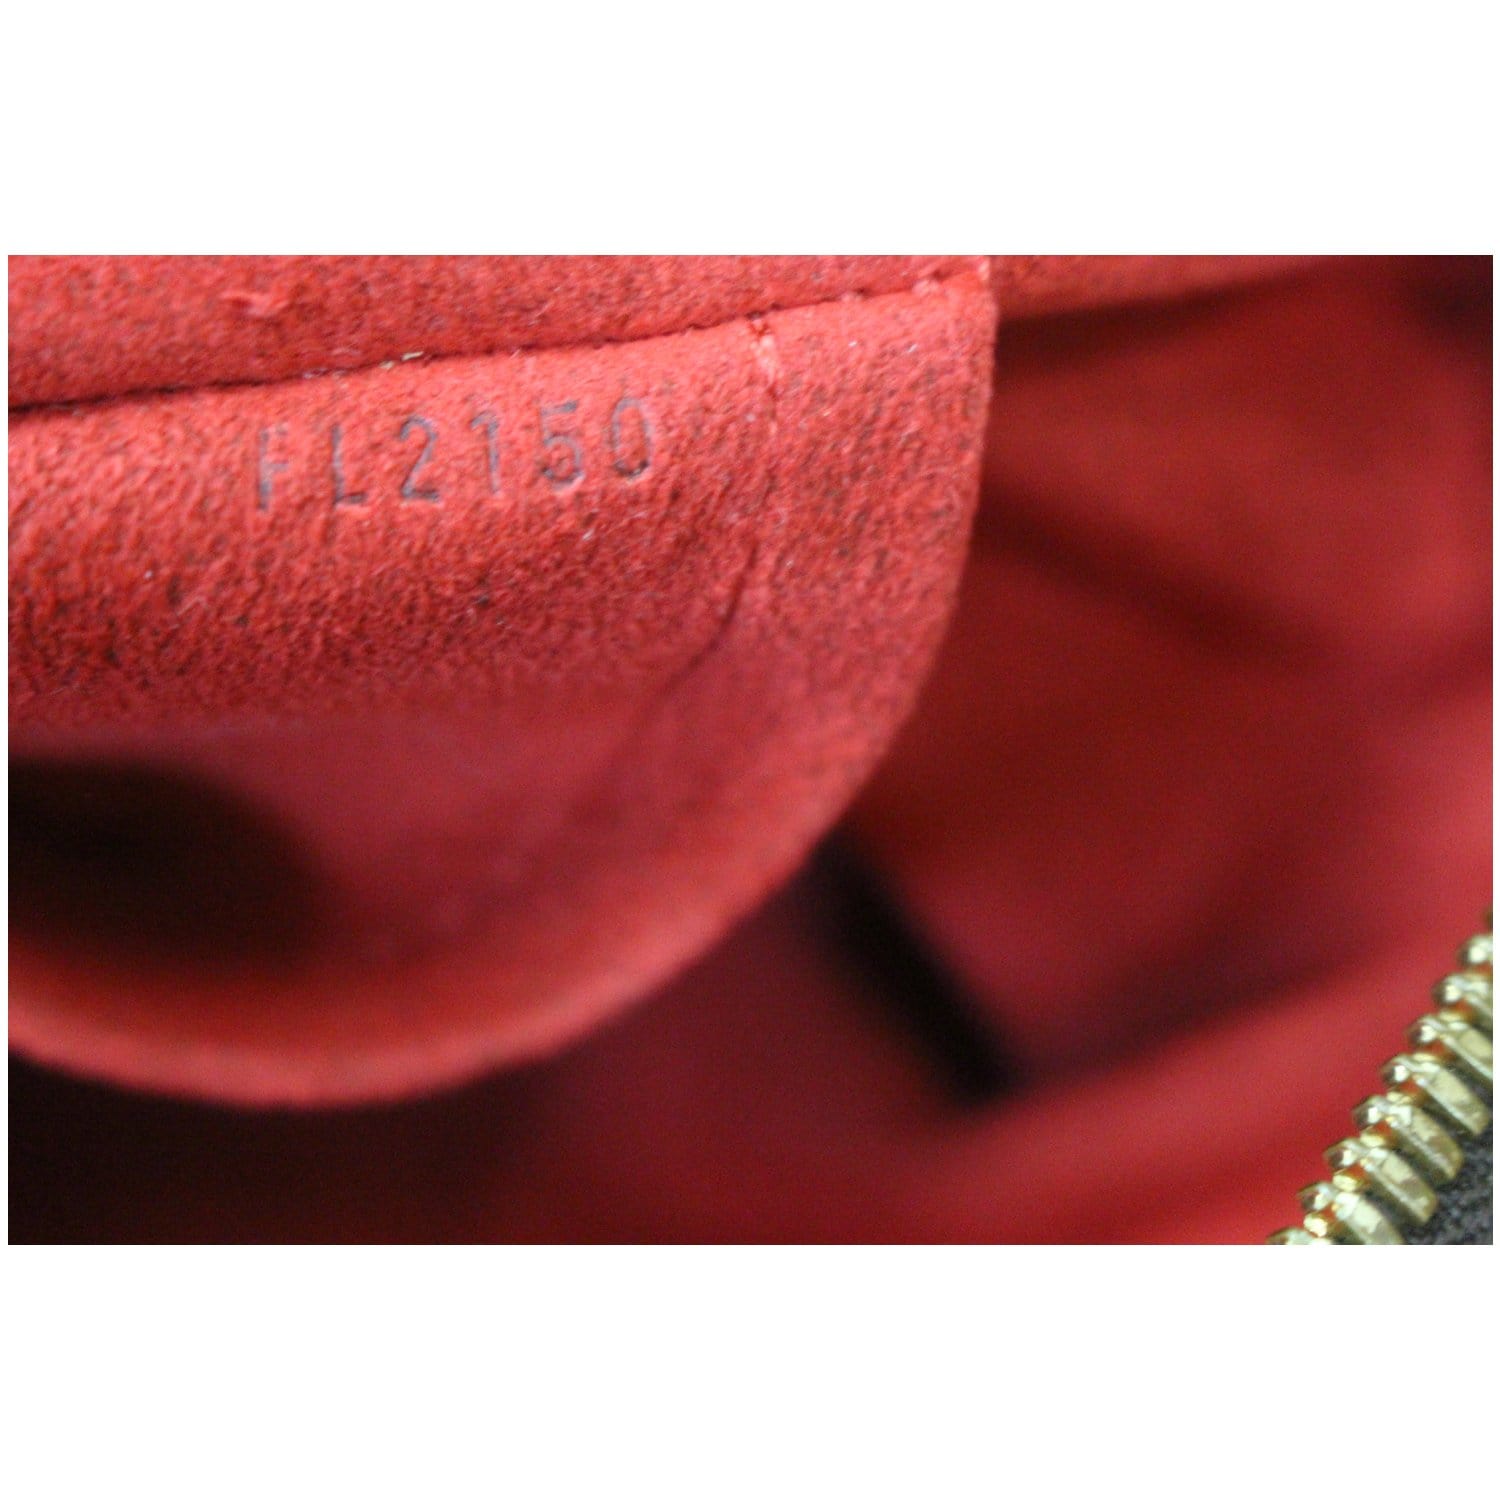 Brown Louis Vuitton Damier Ebene Trevi PM Satchel – Designer Revival